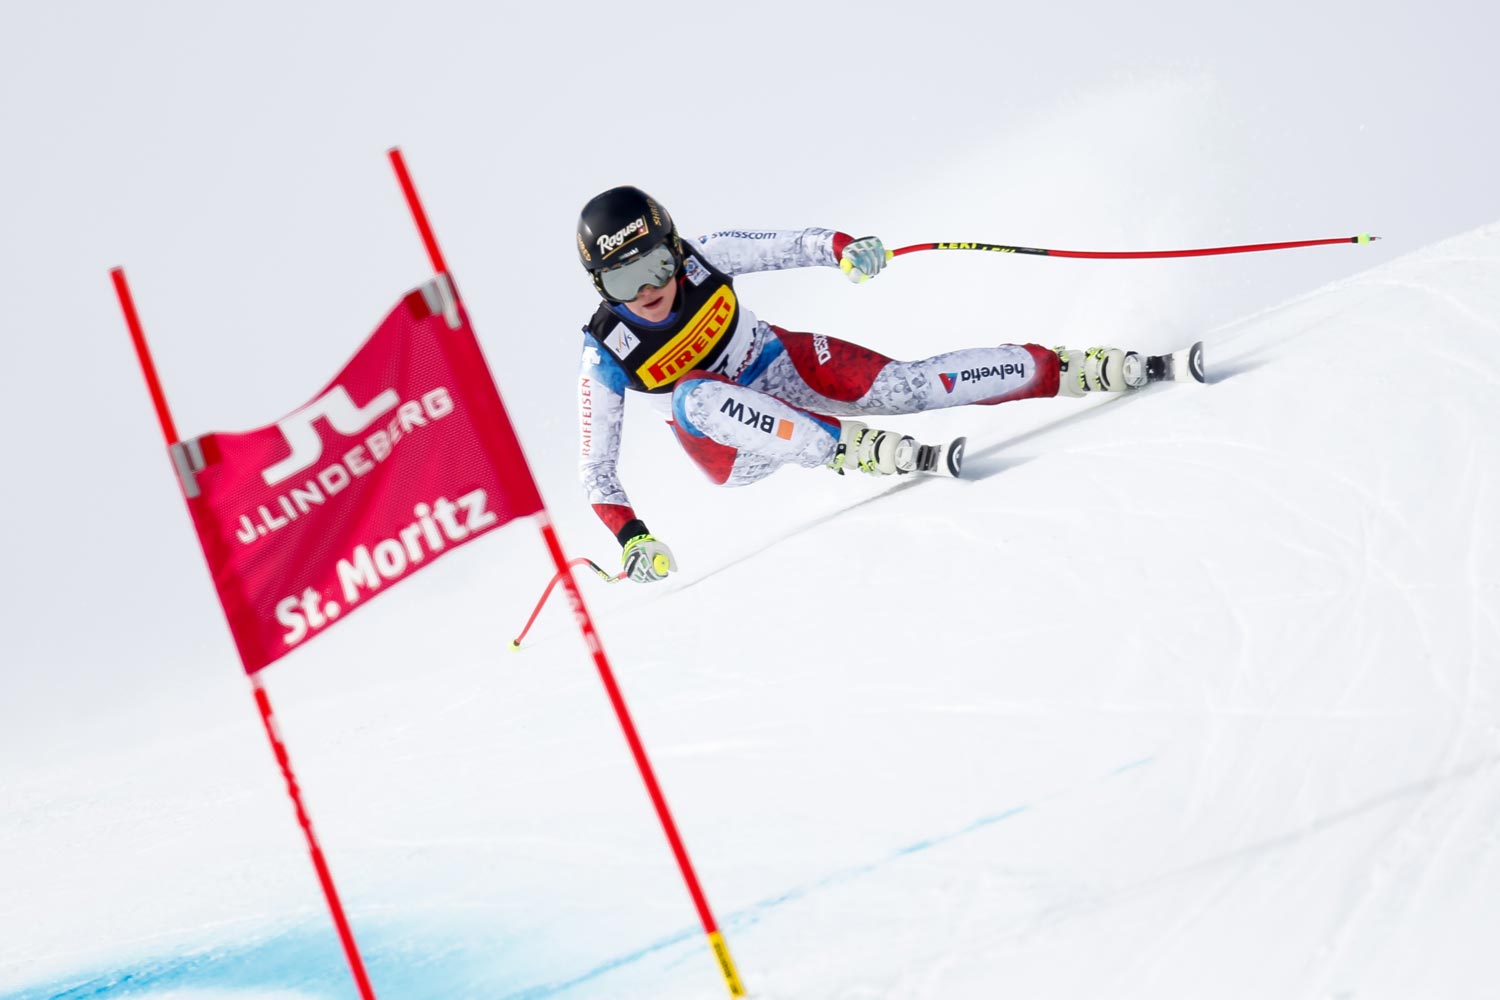 Campionati mondiali di sci alpino 2017 St. Moritz, Super G donne, Lara Gut